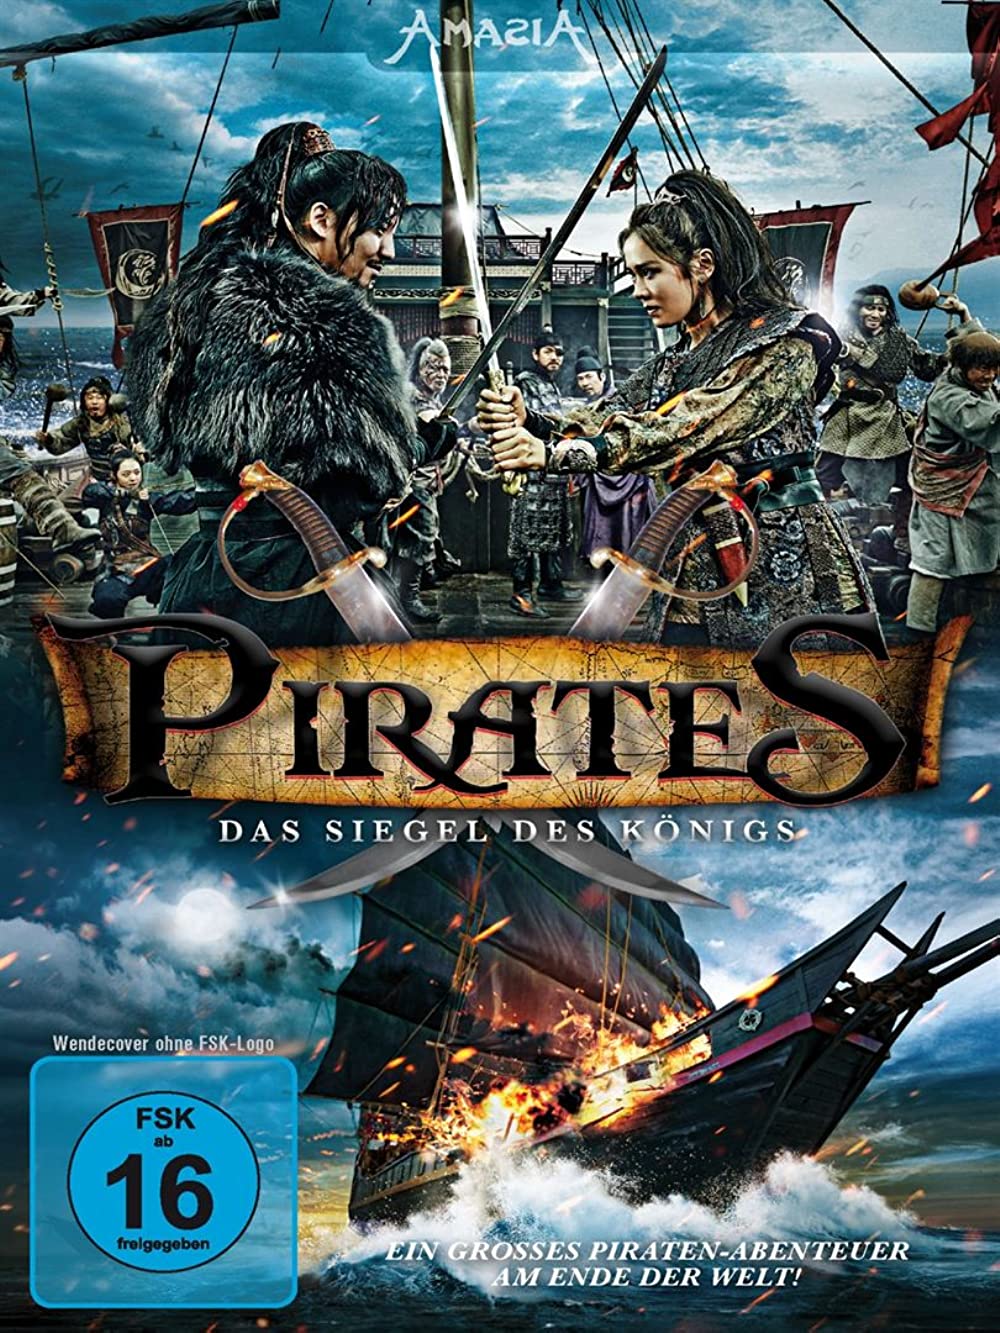 Filmbeschreibung zu The Pirate (OV)